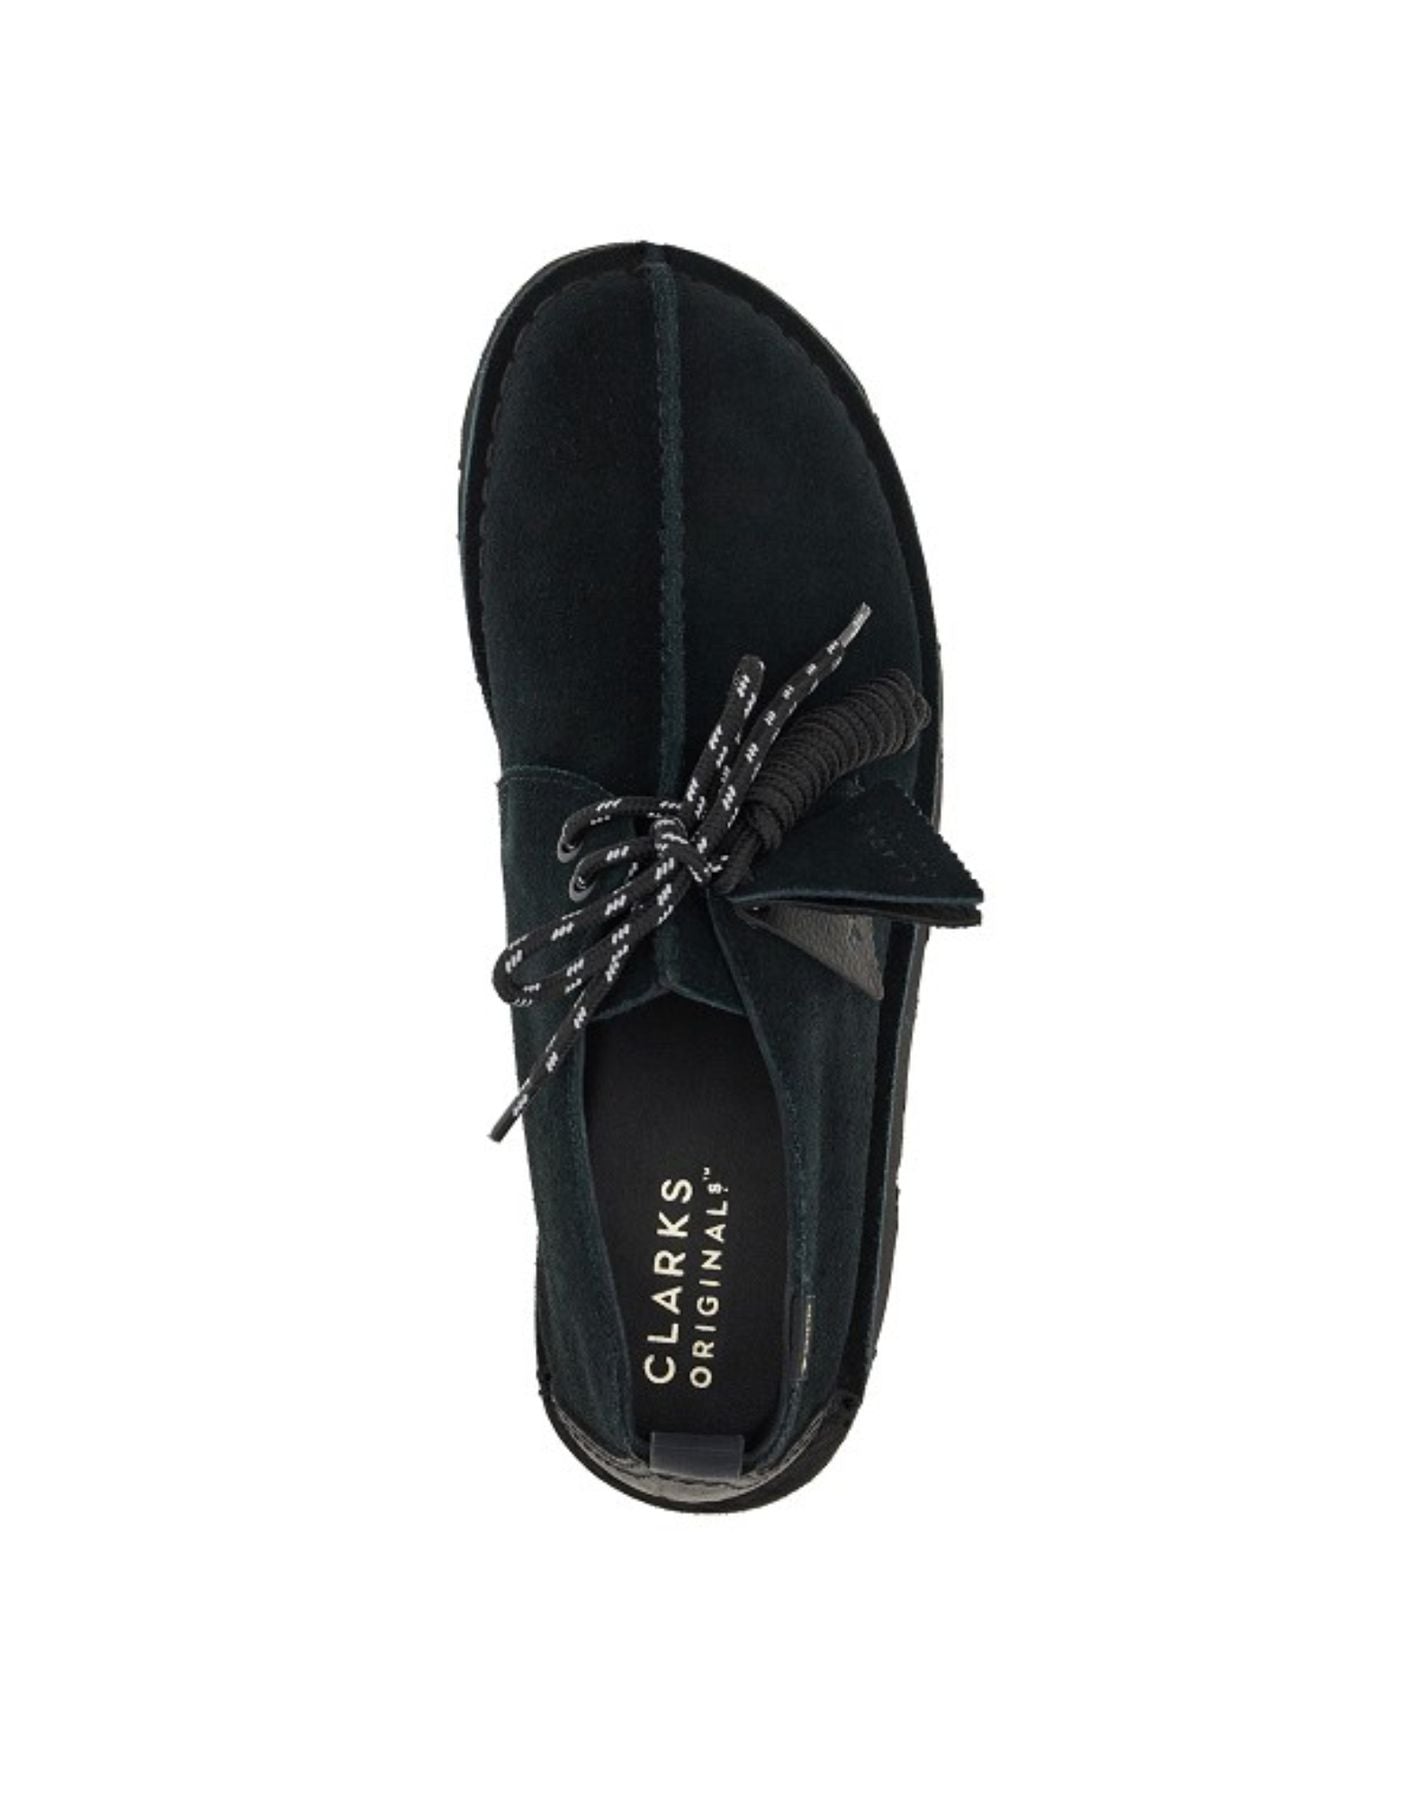 Schuhe für Mann DESERT TREKGTX BLACK SDE Clarks Originale